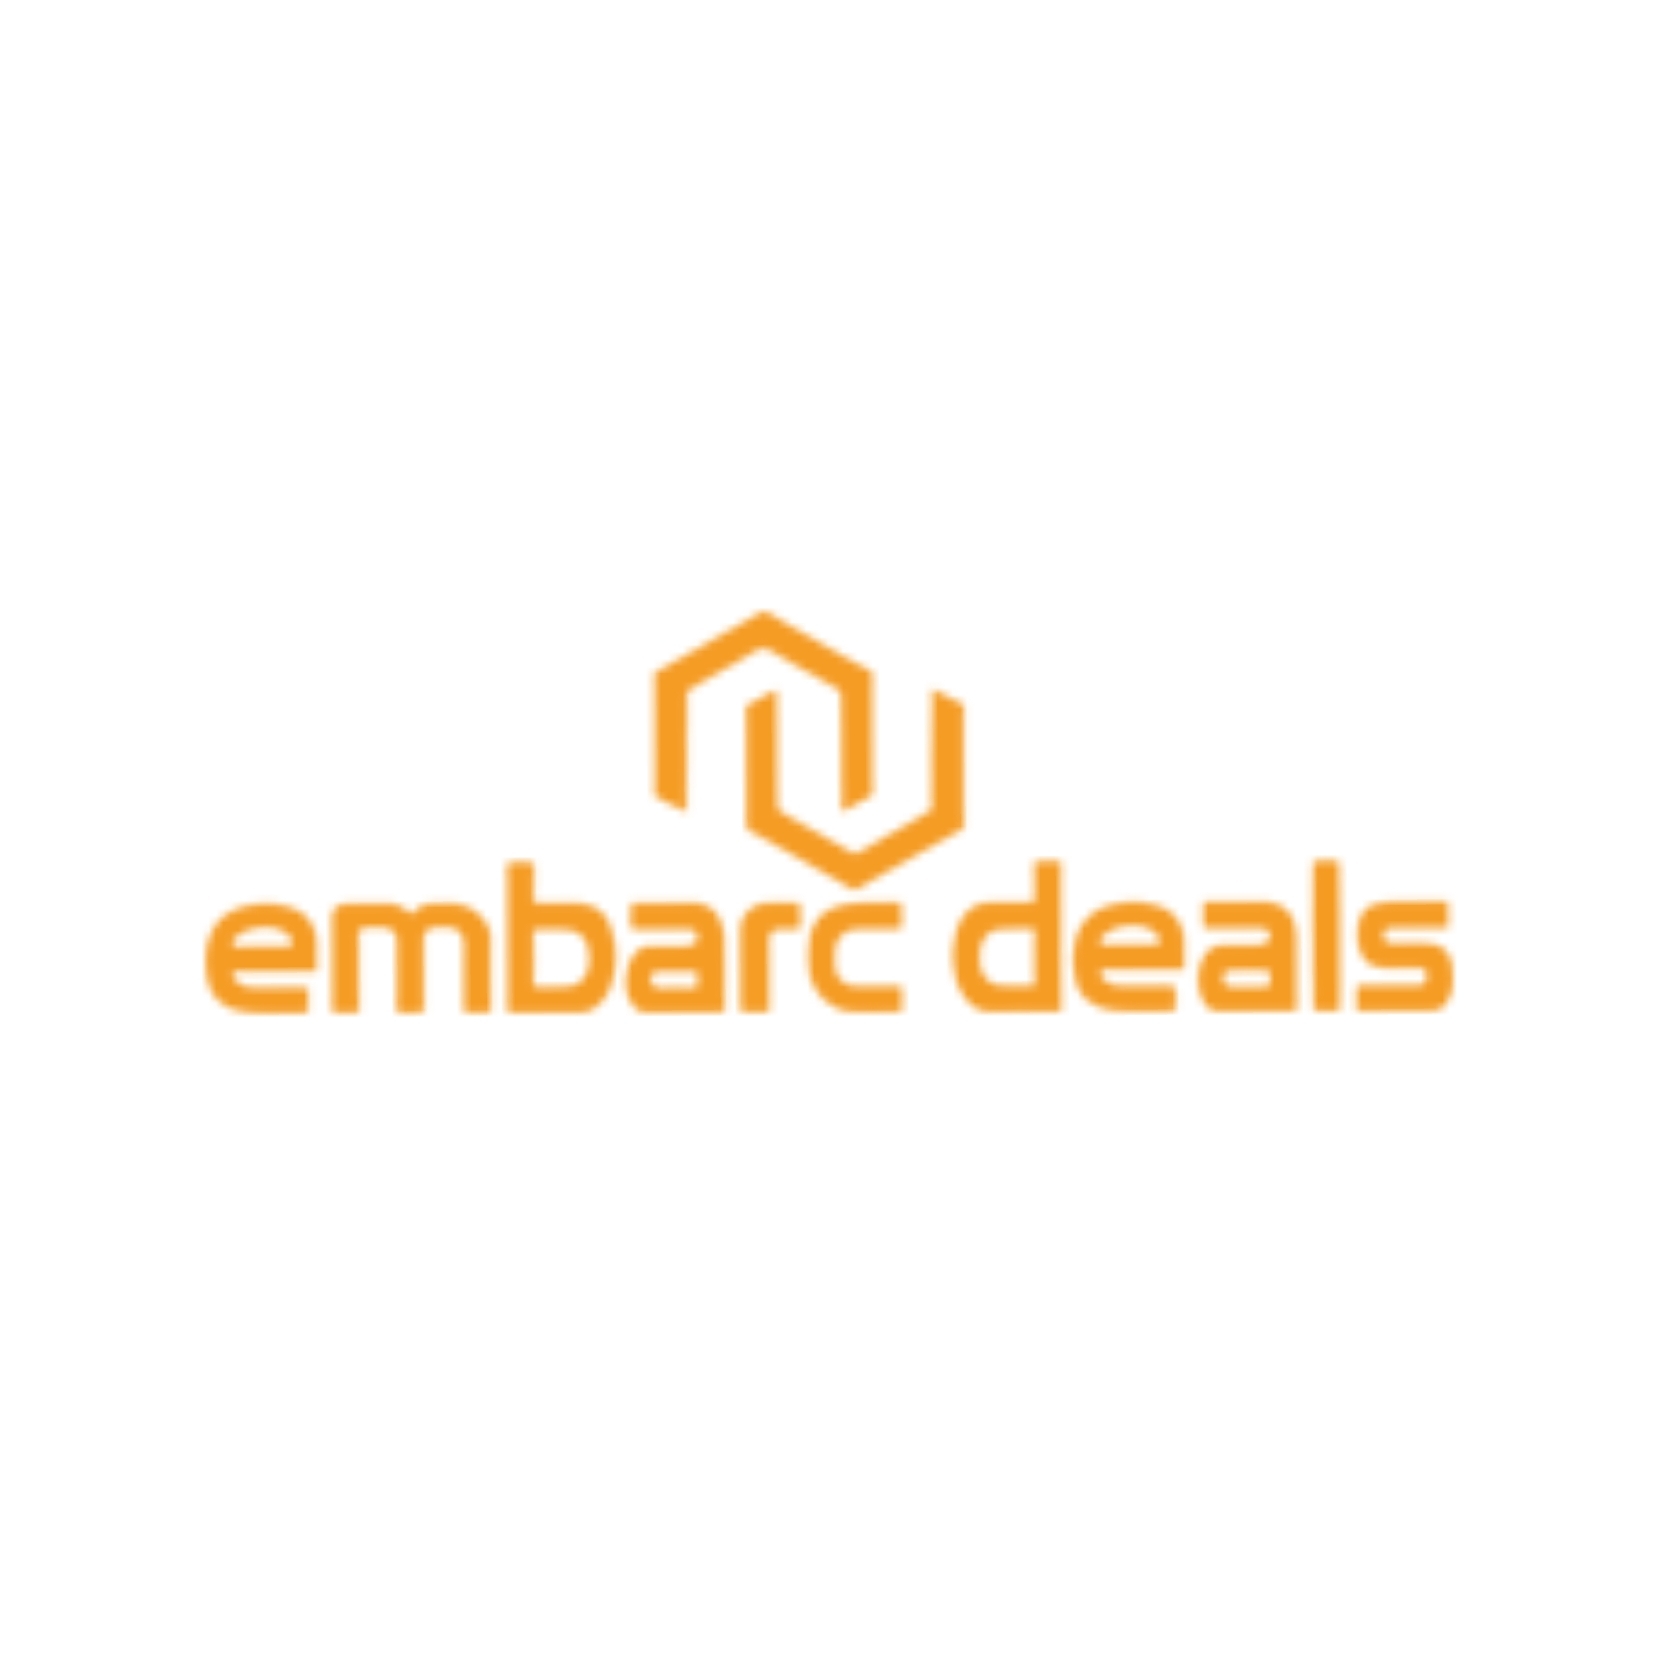 Embarc Deals